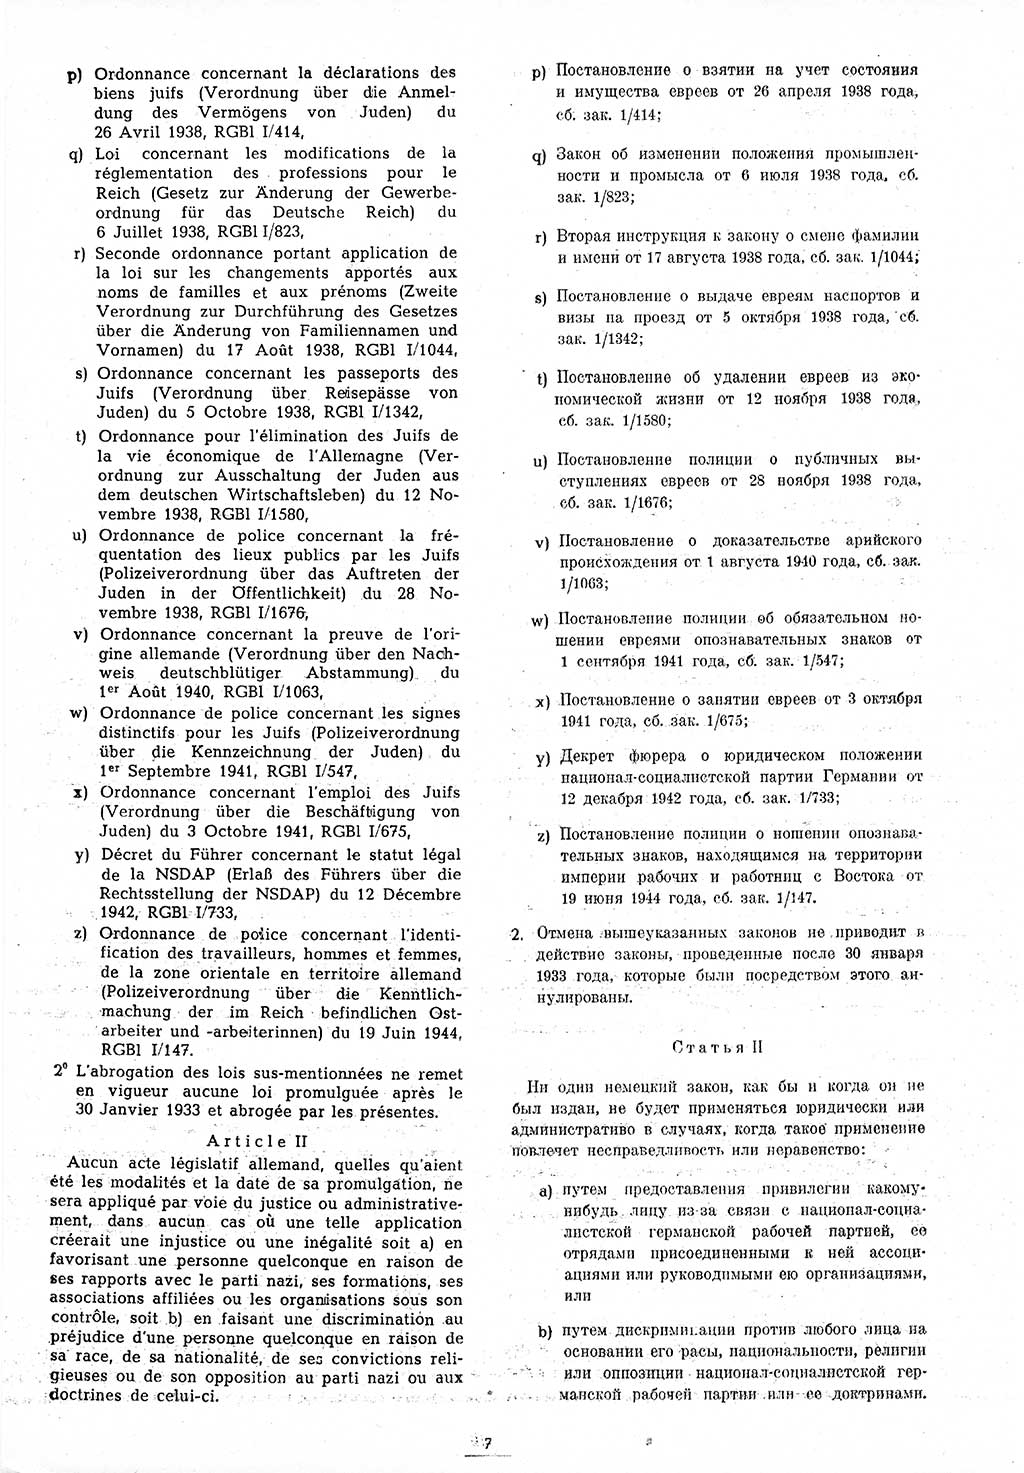 Amtsblatt des Kontrollrats (ABlKR) in Deutschland 1945, Seite 7/1 (ABlKR Dtl. 1945, S. 7/1)